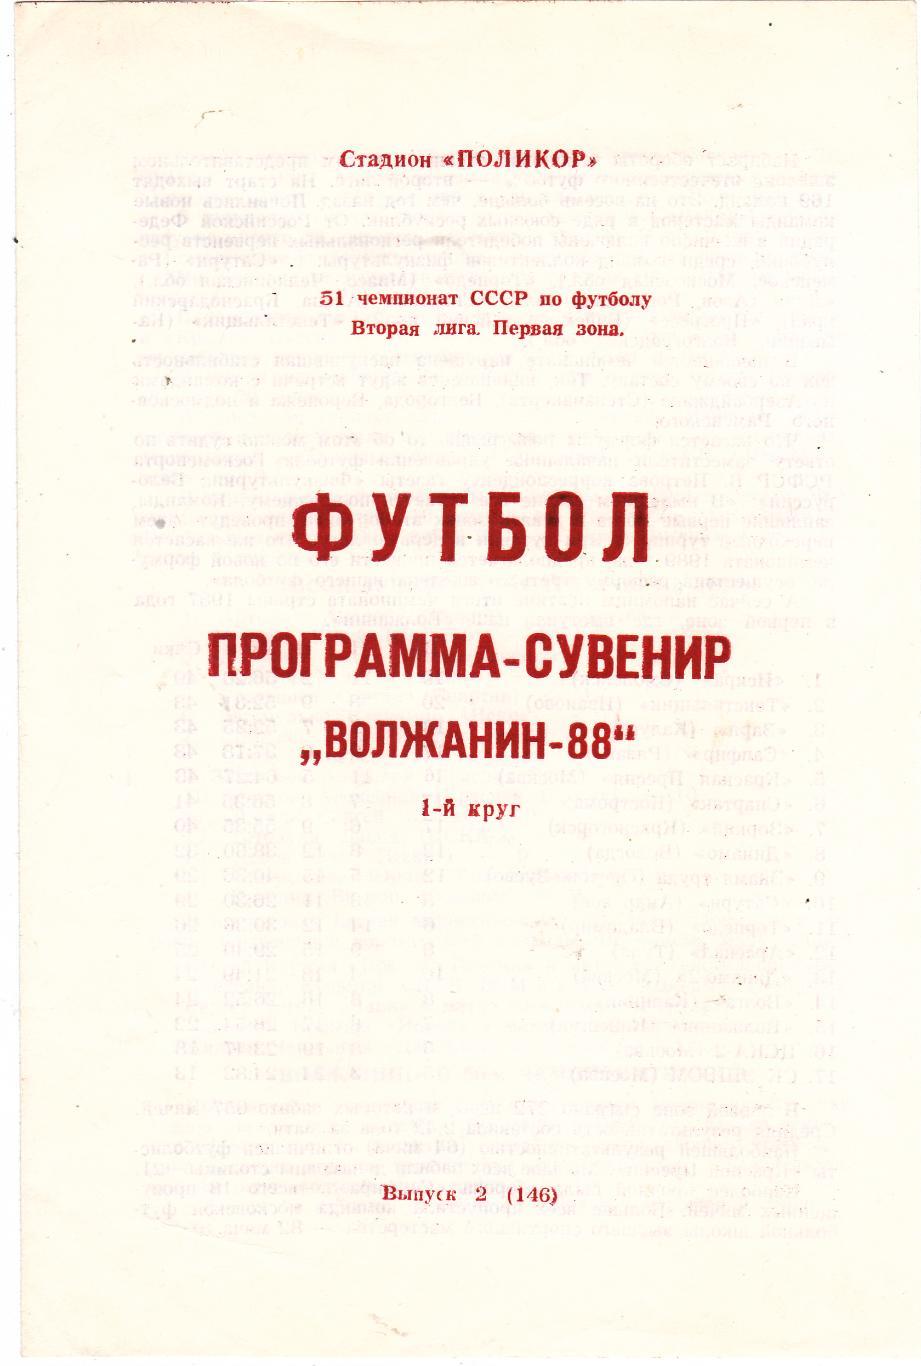 Волжанин (Кинешма) 1988 (Пр-ма сувенир 1 круг)